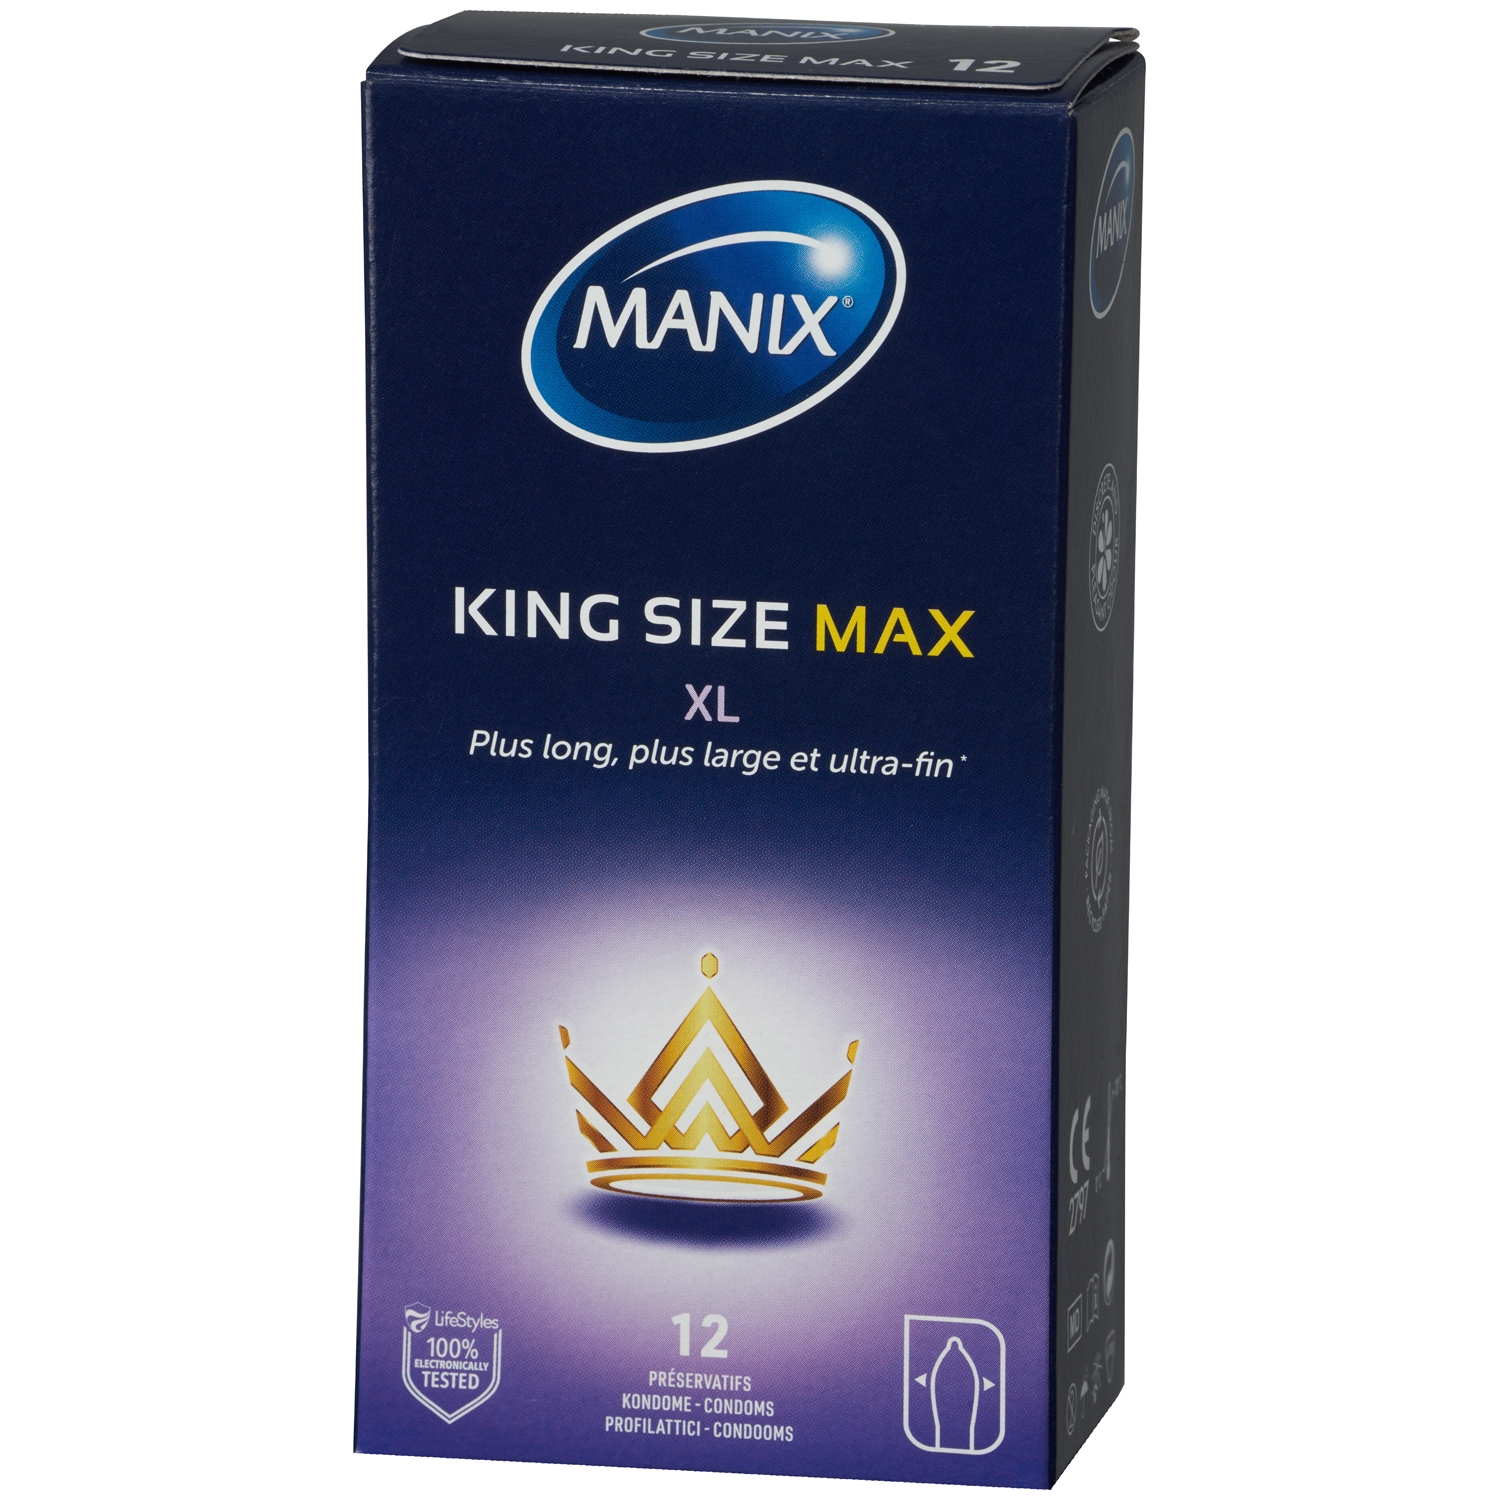 Manix King Size Max XL Kondomer 12 st - Klar | Tillbehör//Kondomer//Favoriter//Par//Mixed//Bättre Sex//Specialkondomer//Par kondomer//Stora Kondomer//Smaksatta Kondomer//Små Kondomer//Manix | Intimast